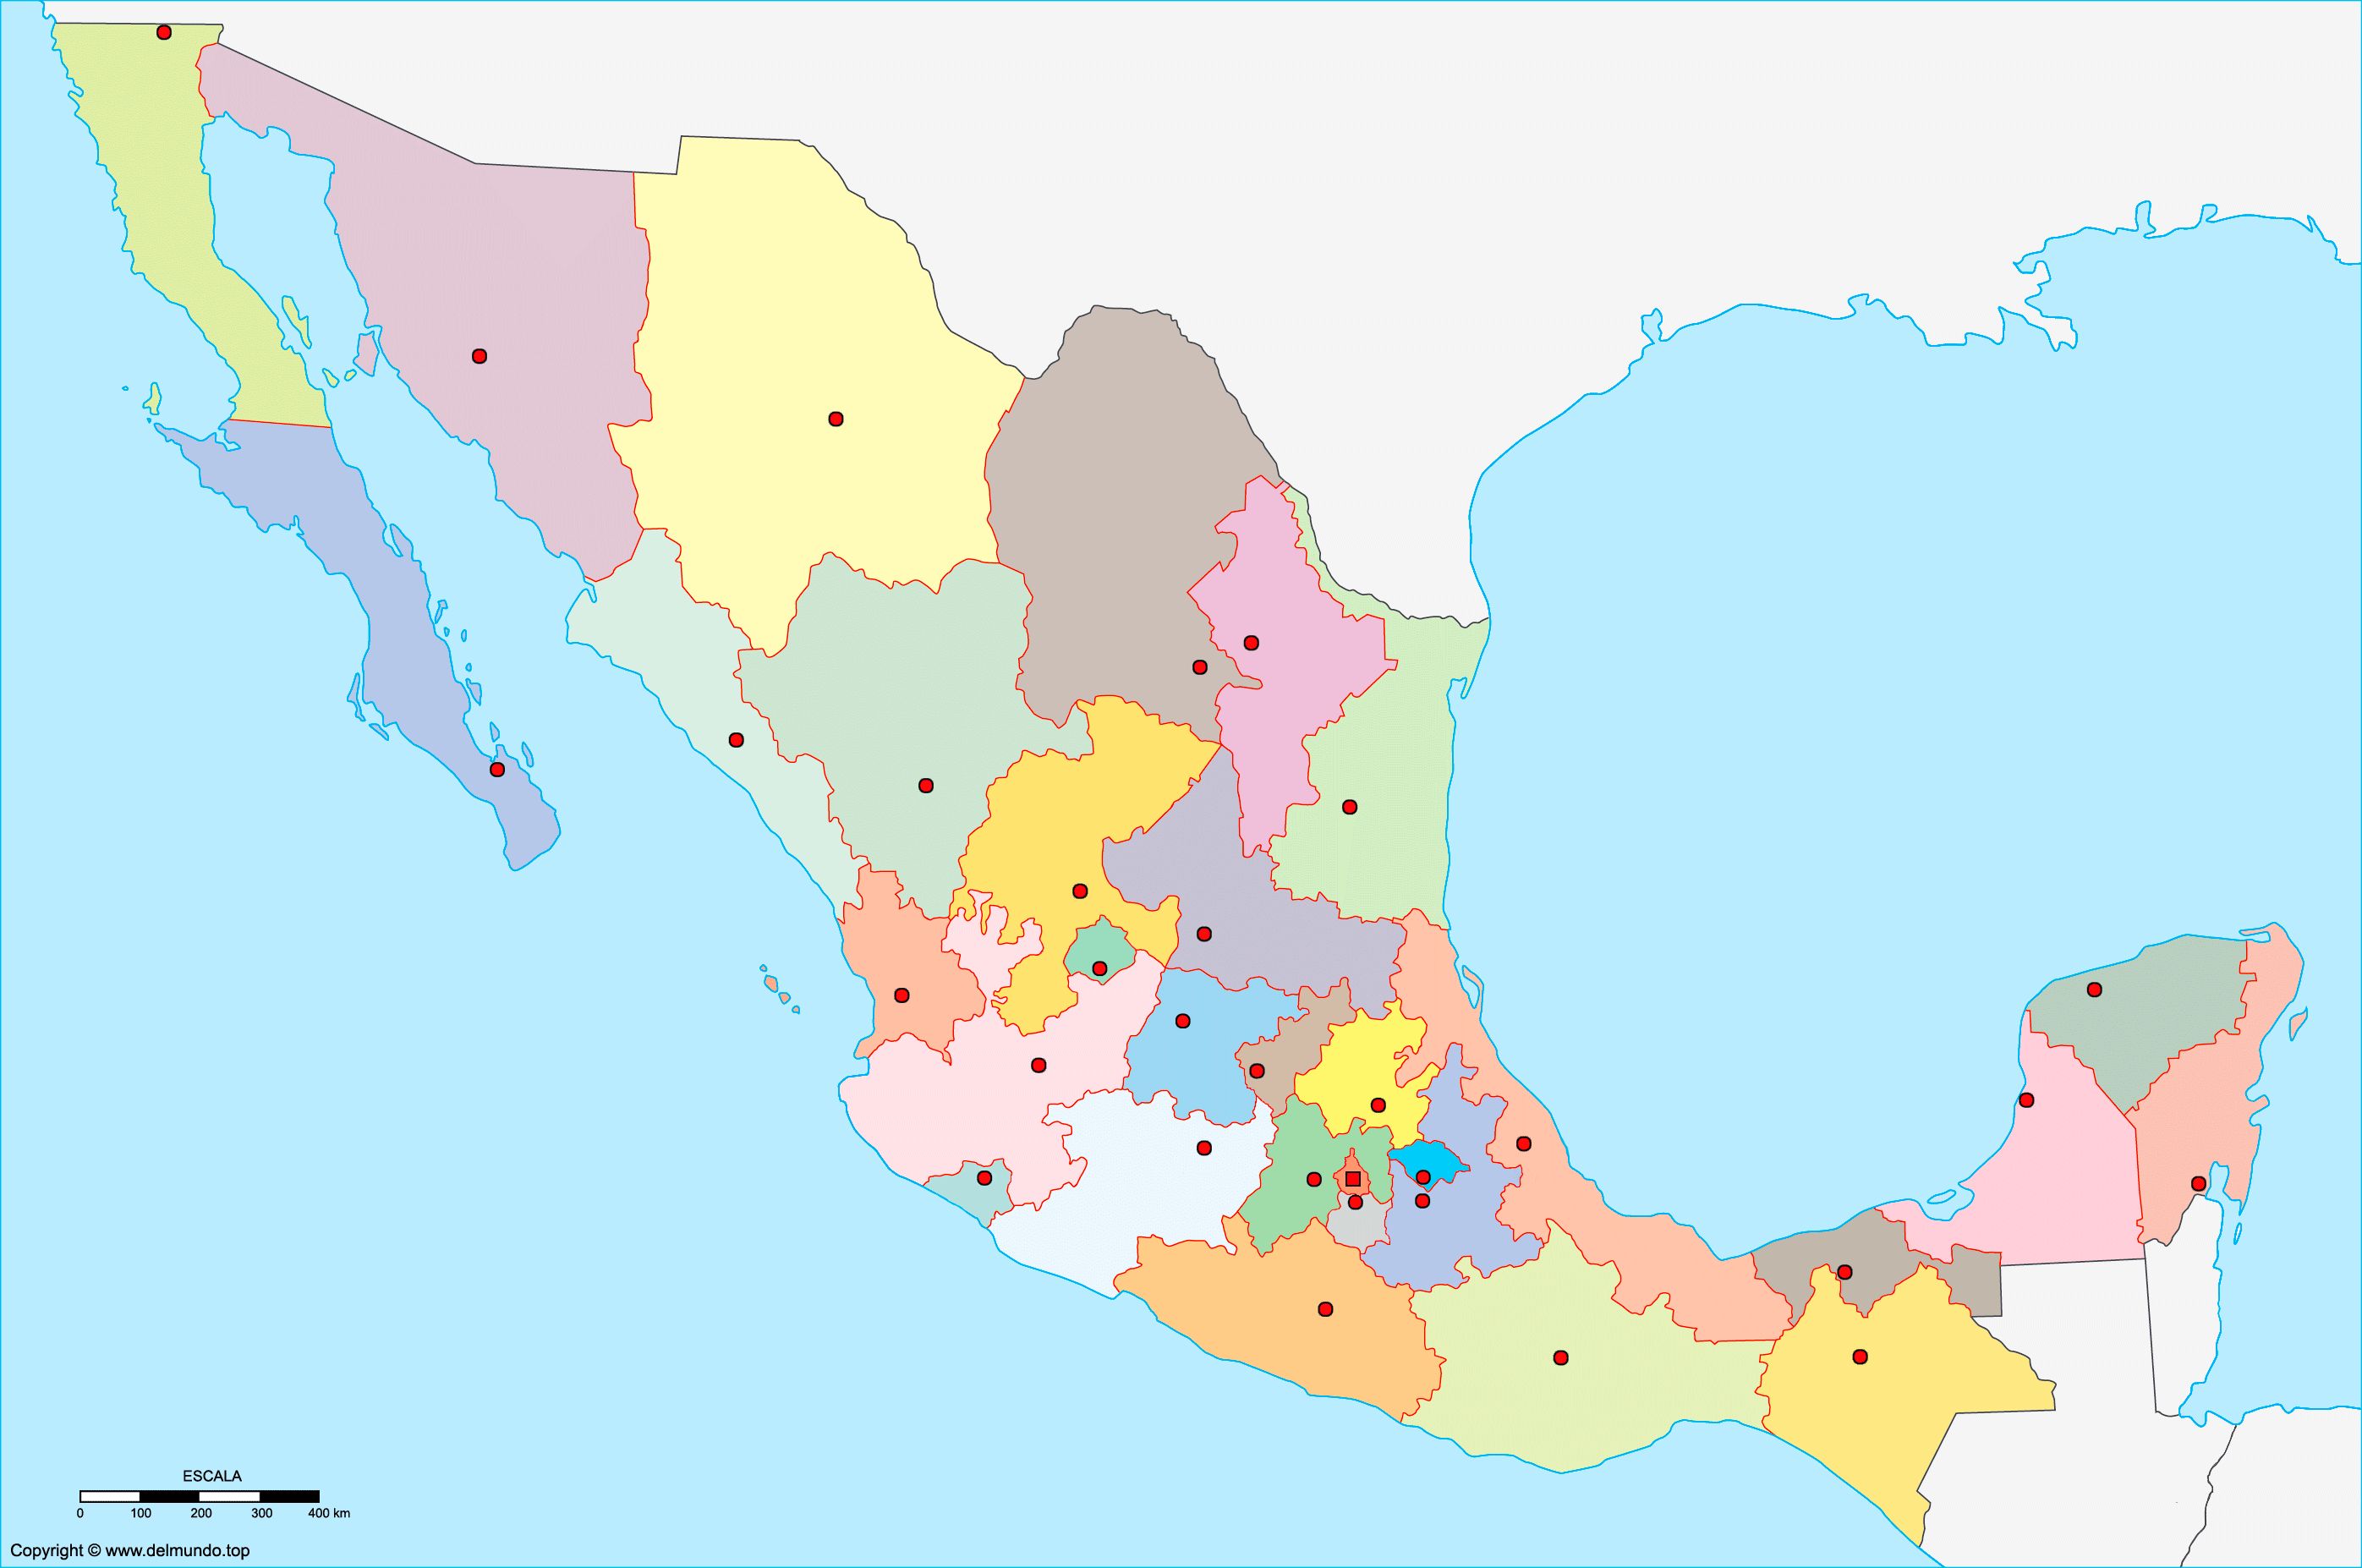 Mapa de México sin nombres